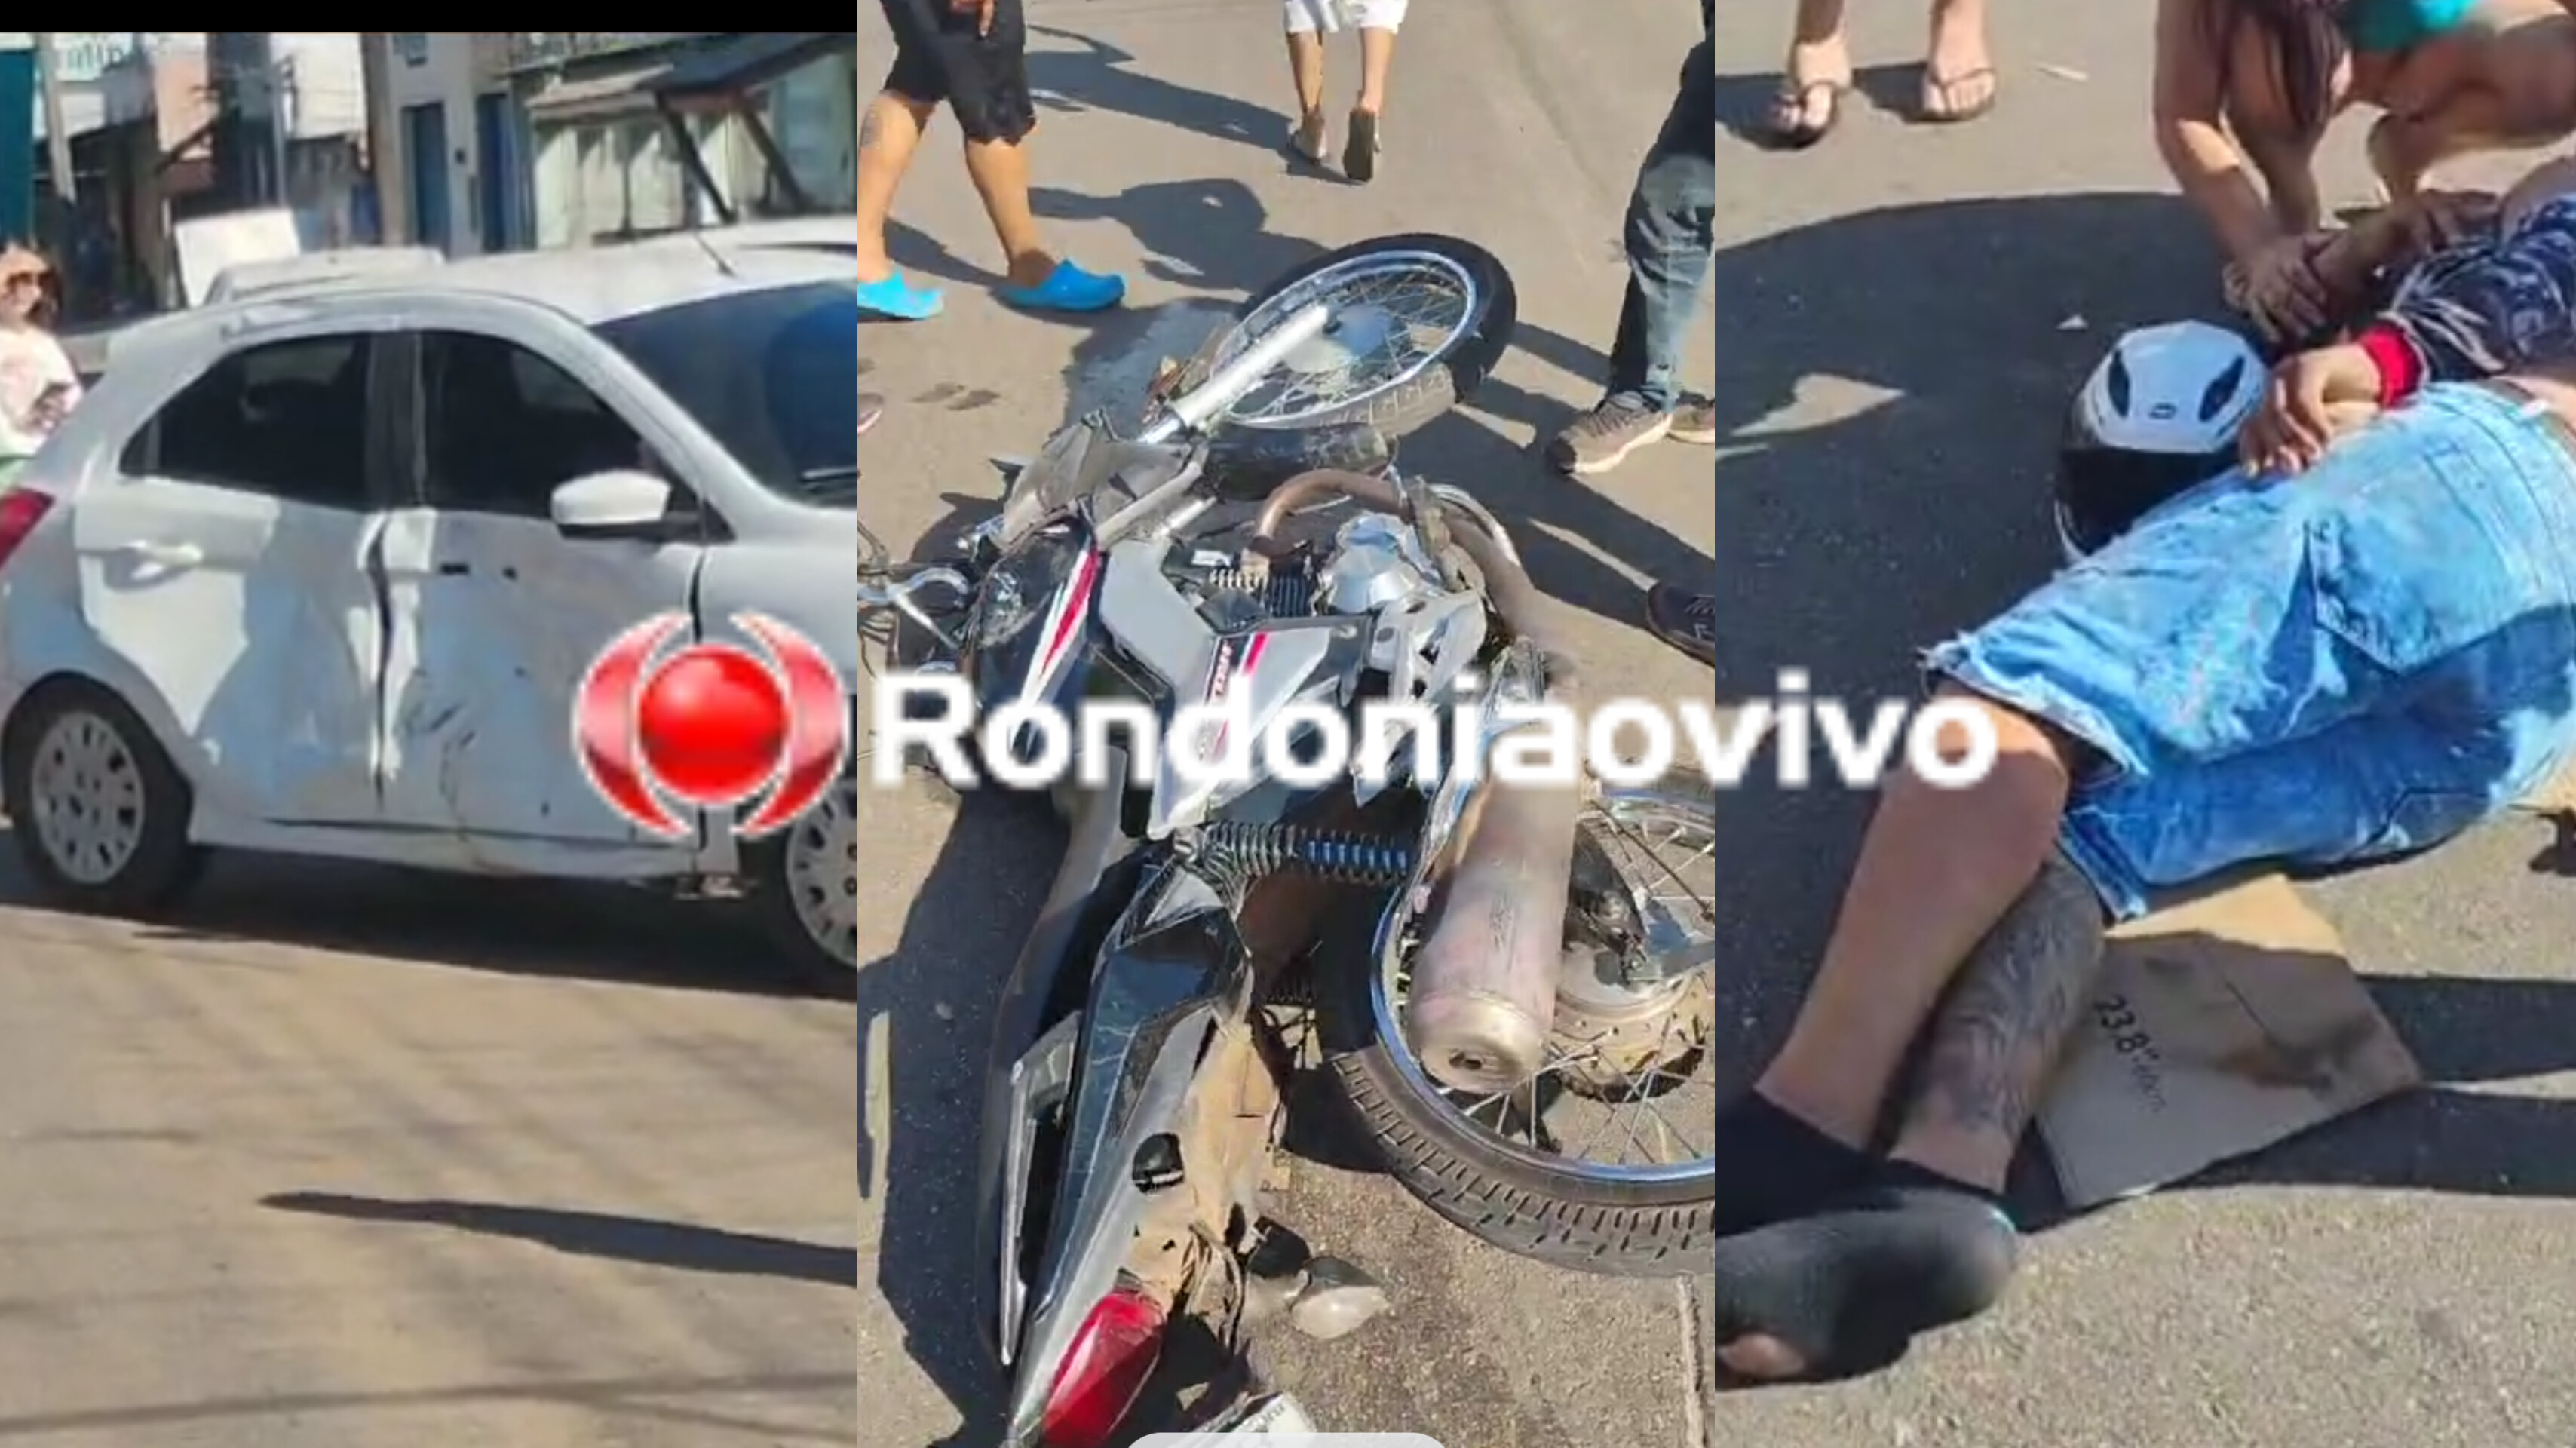 DEU RUIM: Jovem empina moto na frente da PM e causa grave acidente em fuga